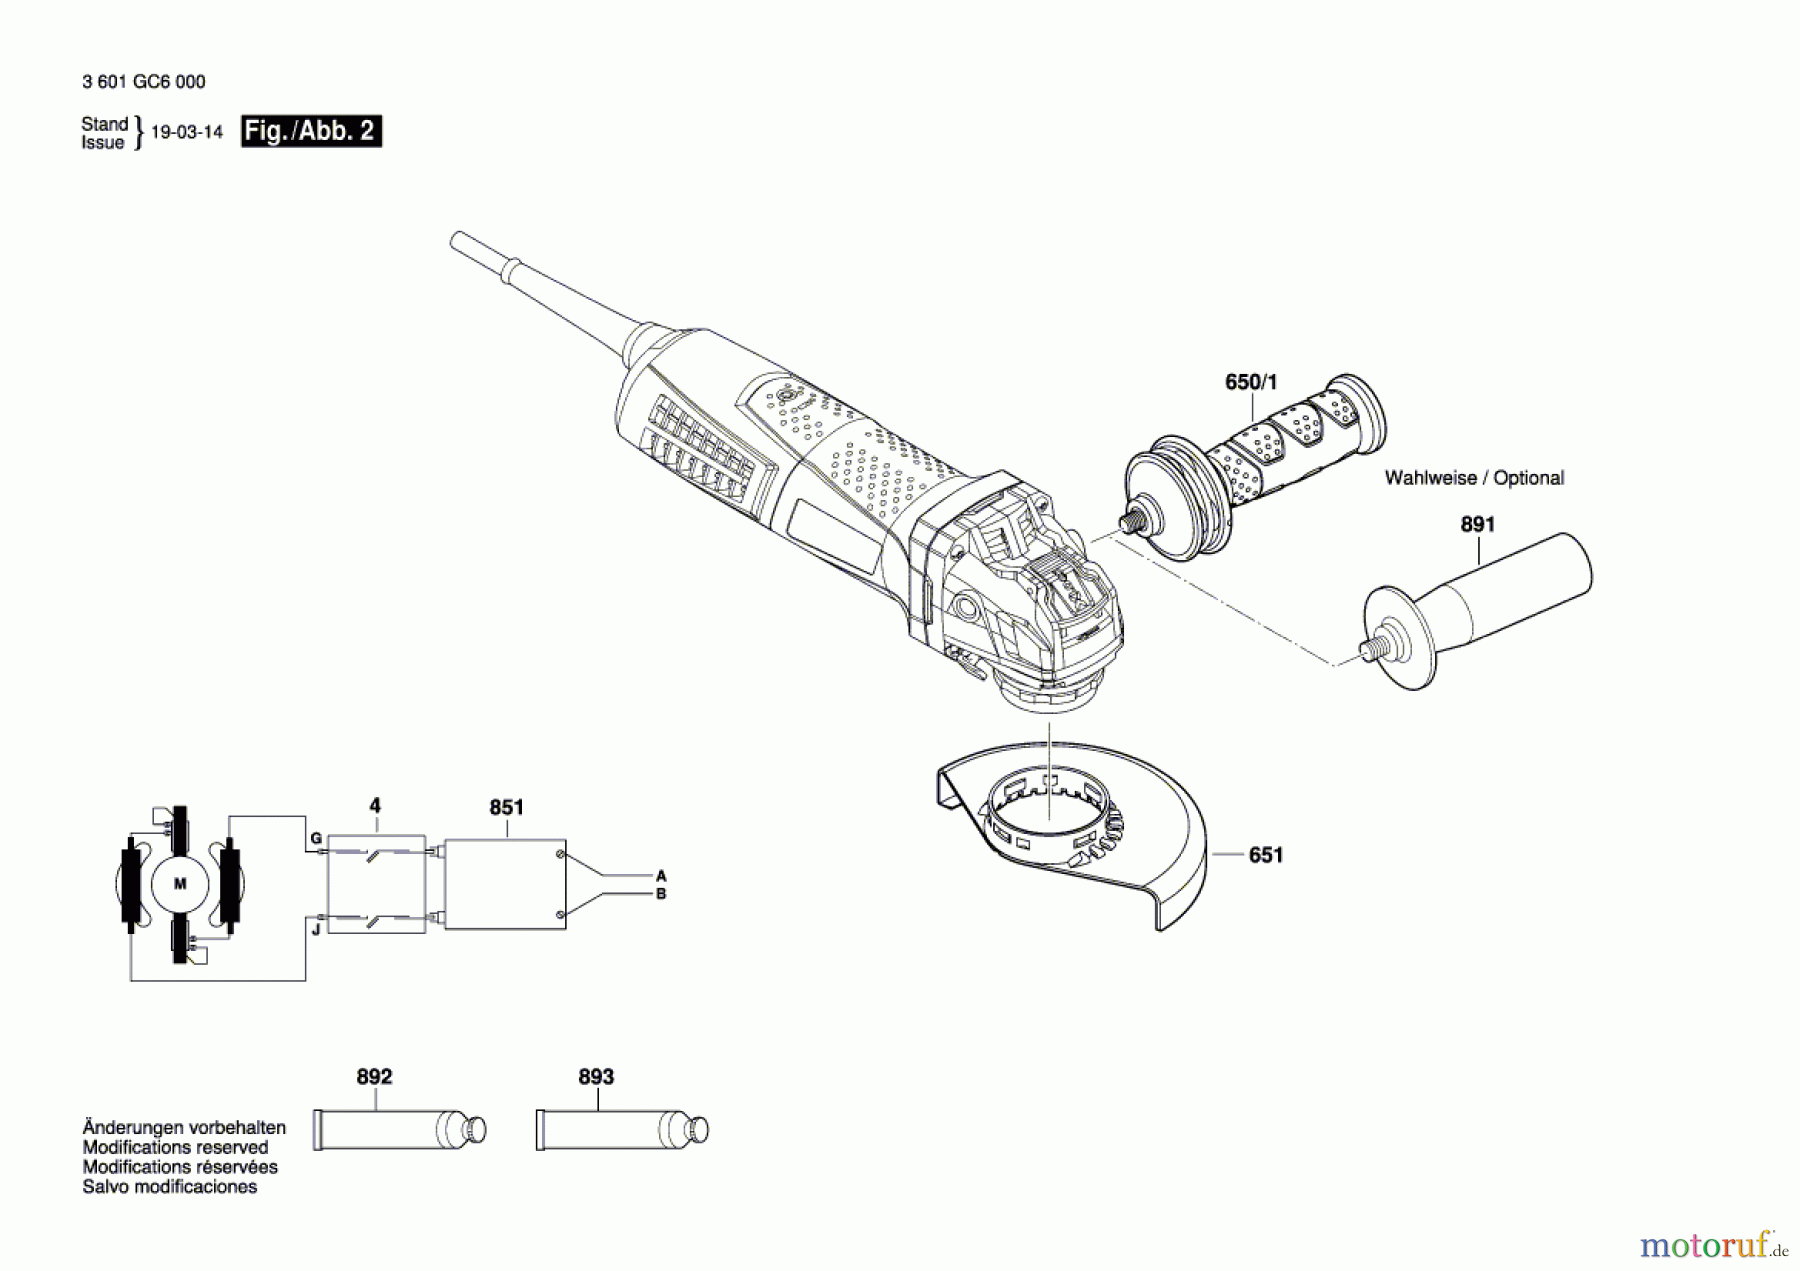  Bosch Werkzeug Winkelschleifer GWX 17-150 Seite 2